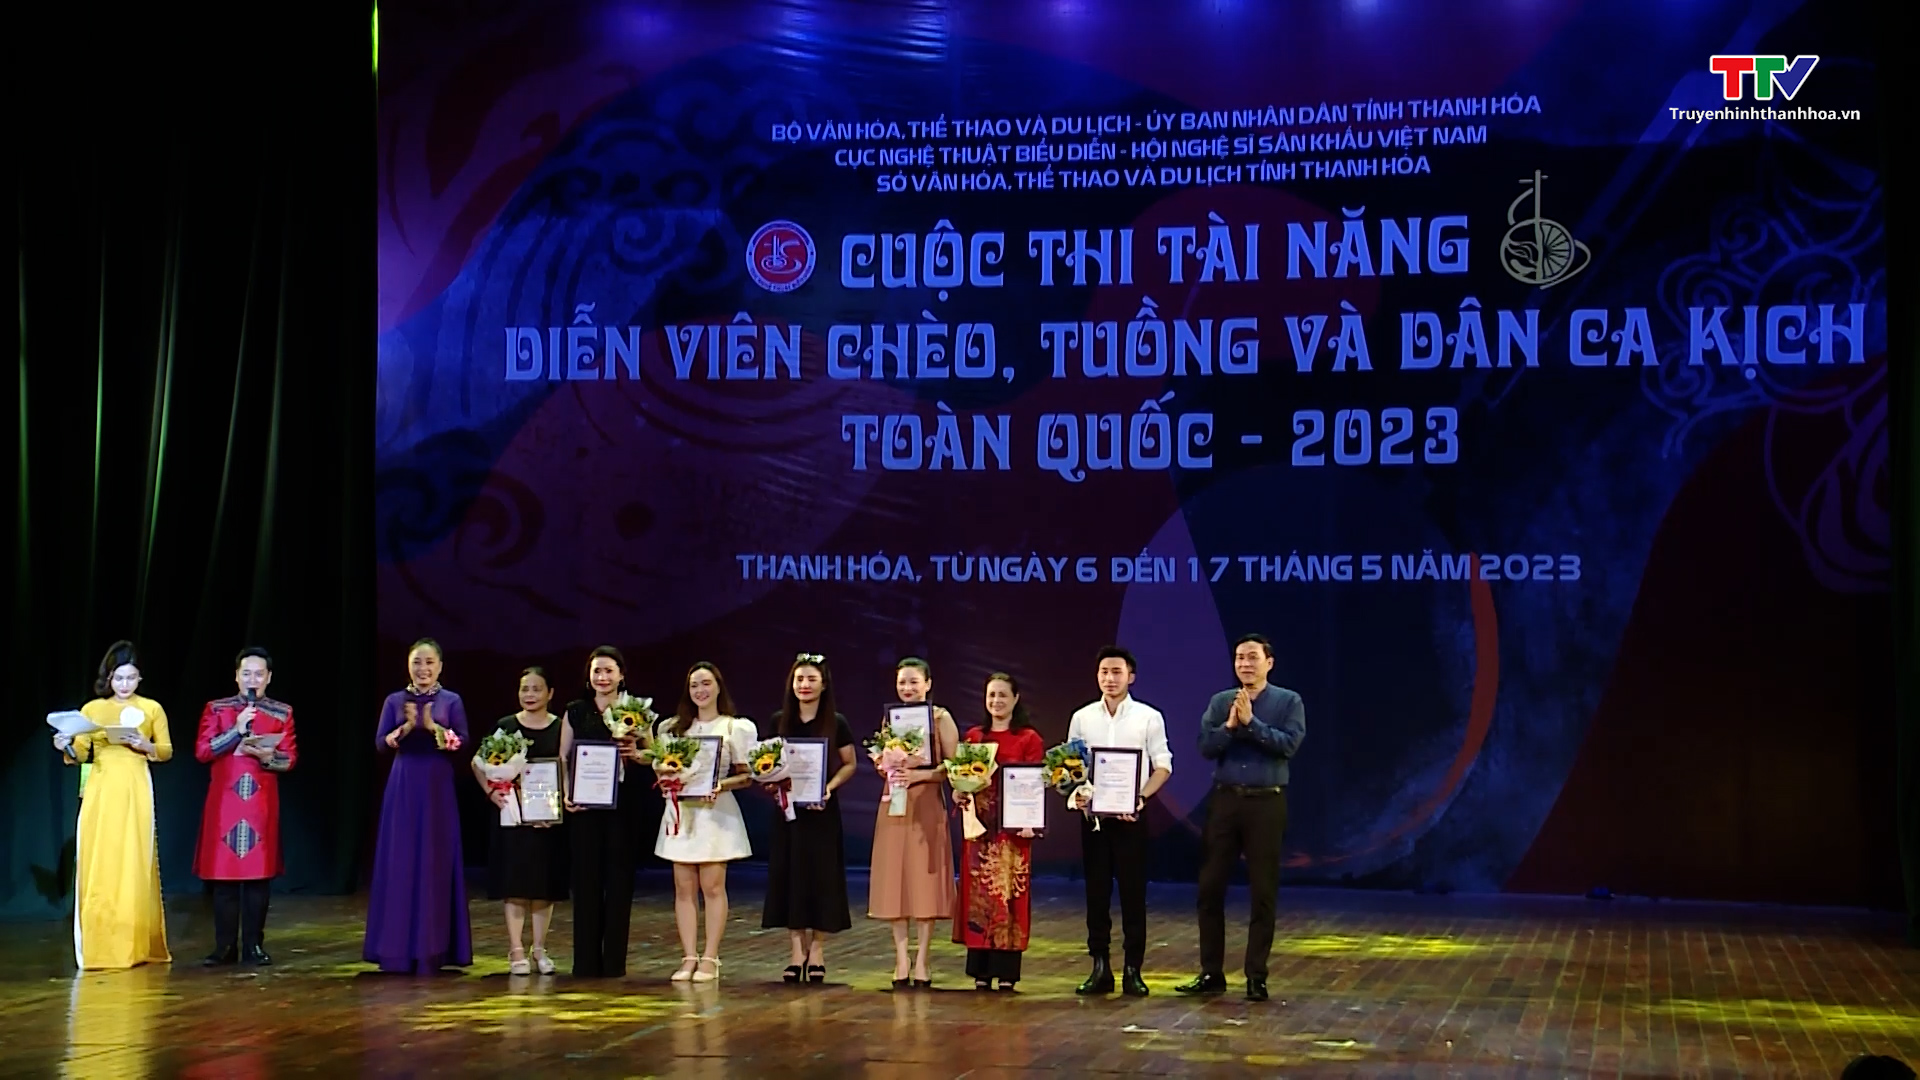 Tổng kết và trao giải cuộc thi Tài năng diễn viên tuồng và dân ca kịch toàn quốc năm 2023 - Ảnh 3.